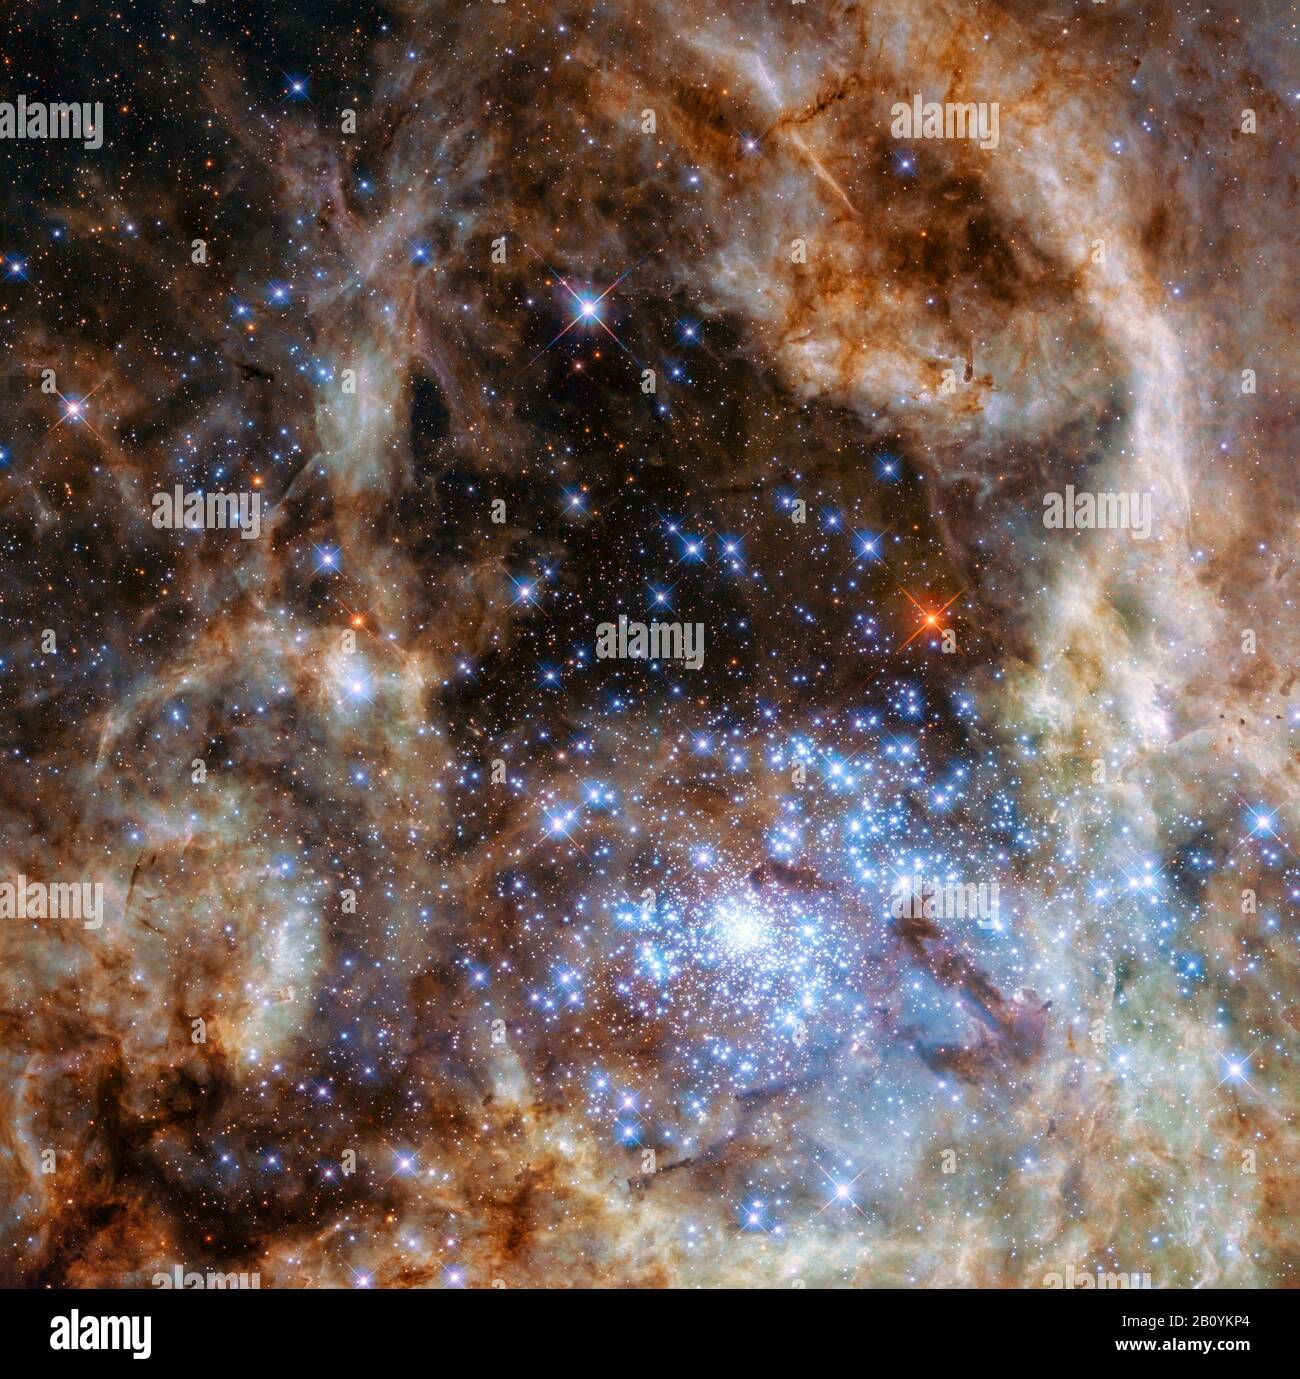 La regione centrale della Nebula Tarantula nella Grande Nuvola Magellanica. Il giovane e denso gruppo di stelle R136 può essere visto nell'angolo inferiore destro. Foto Stock